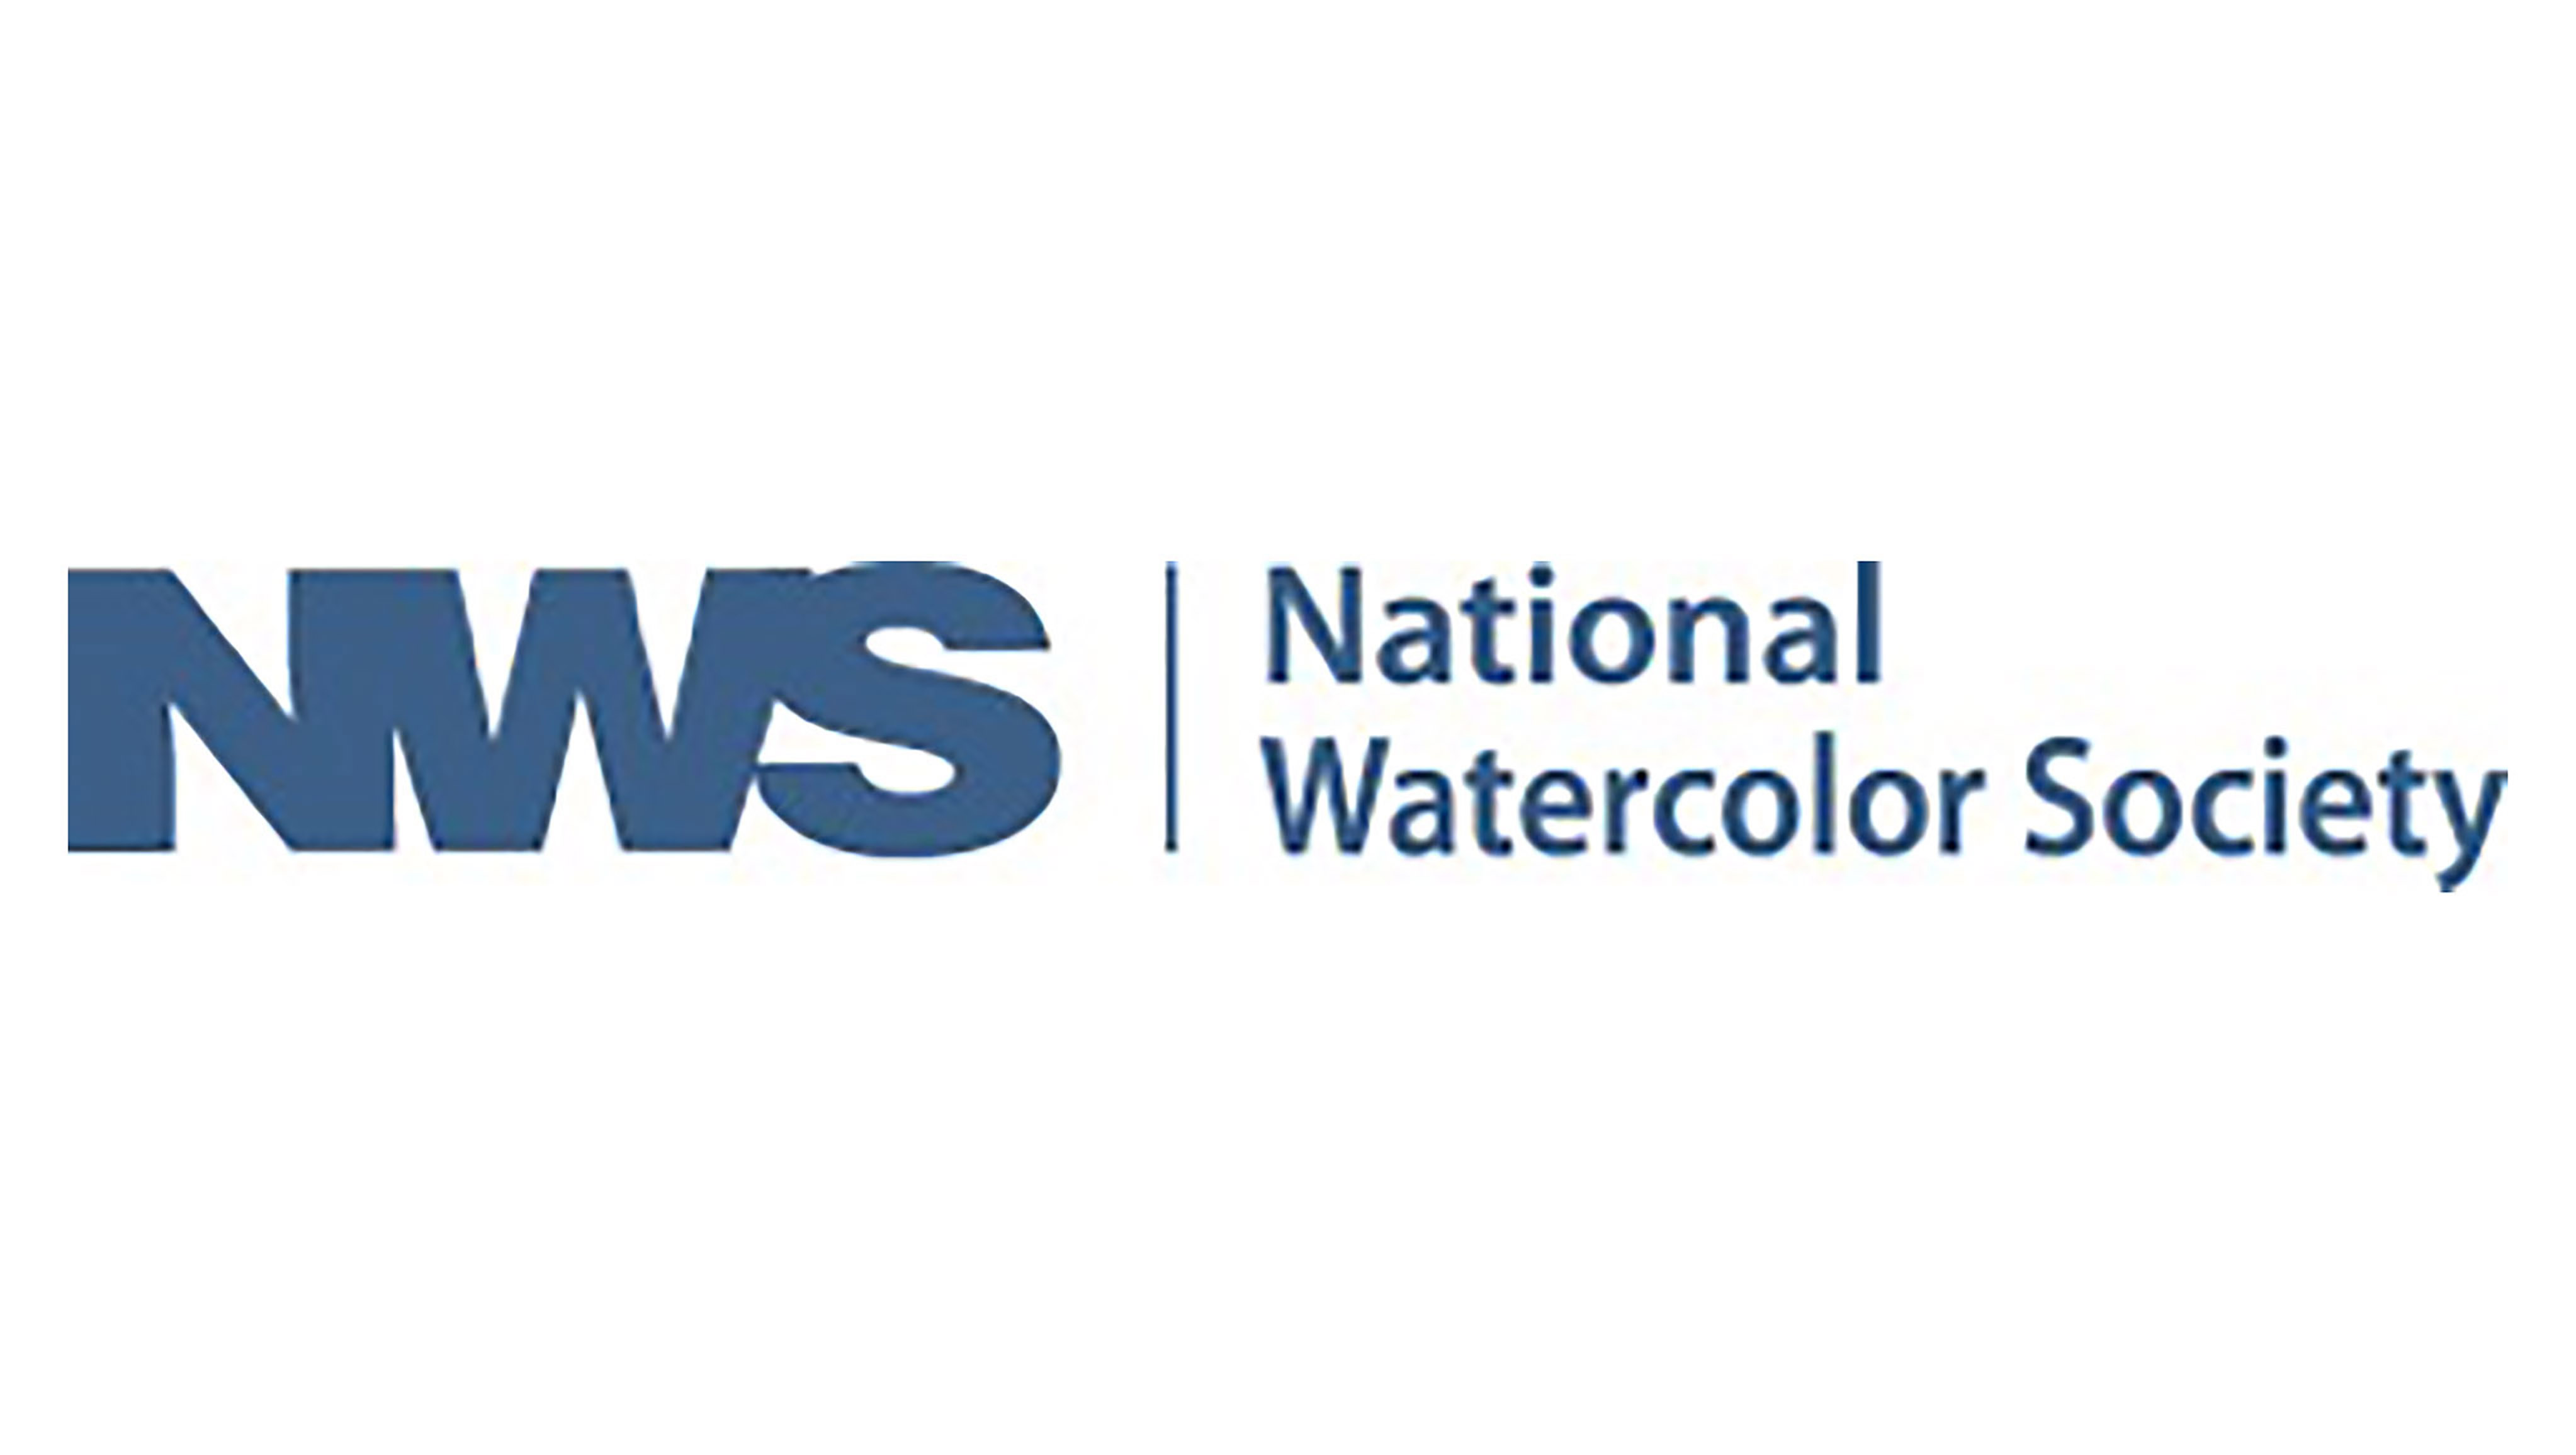 National Watercolor Society